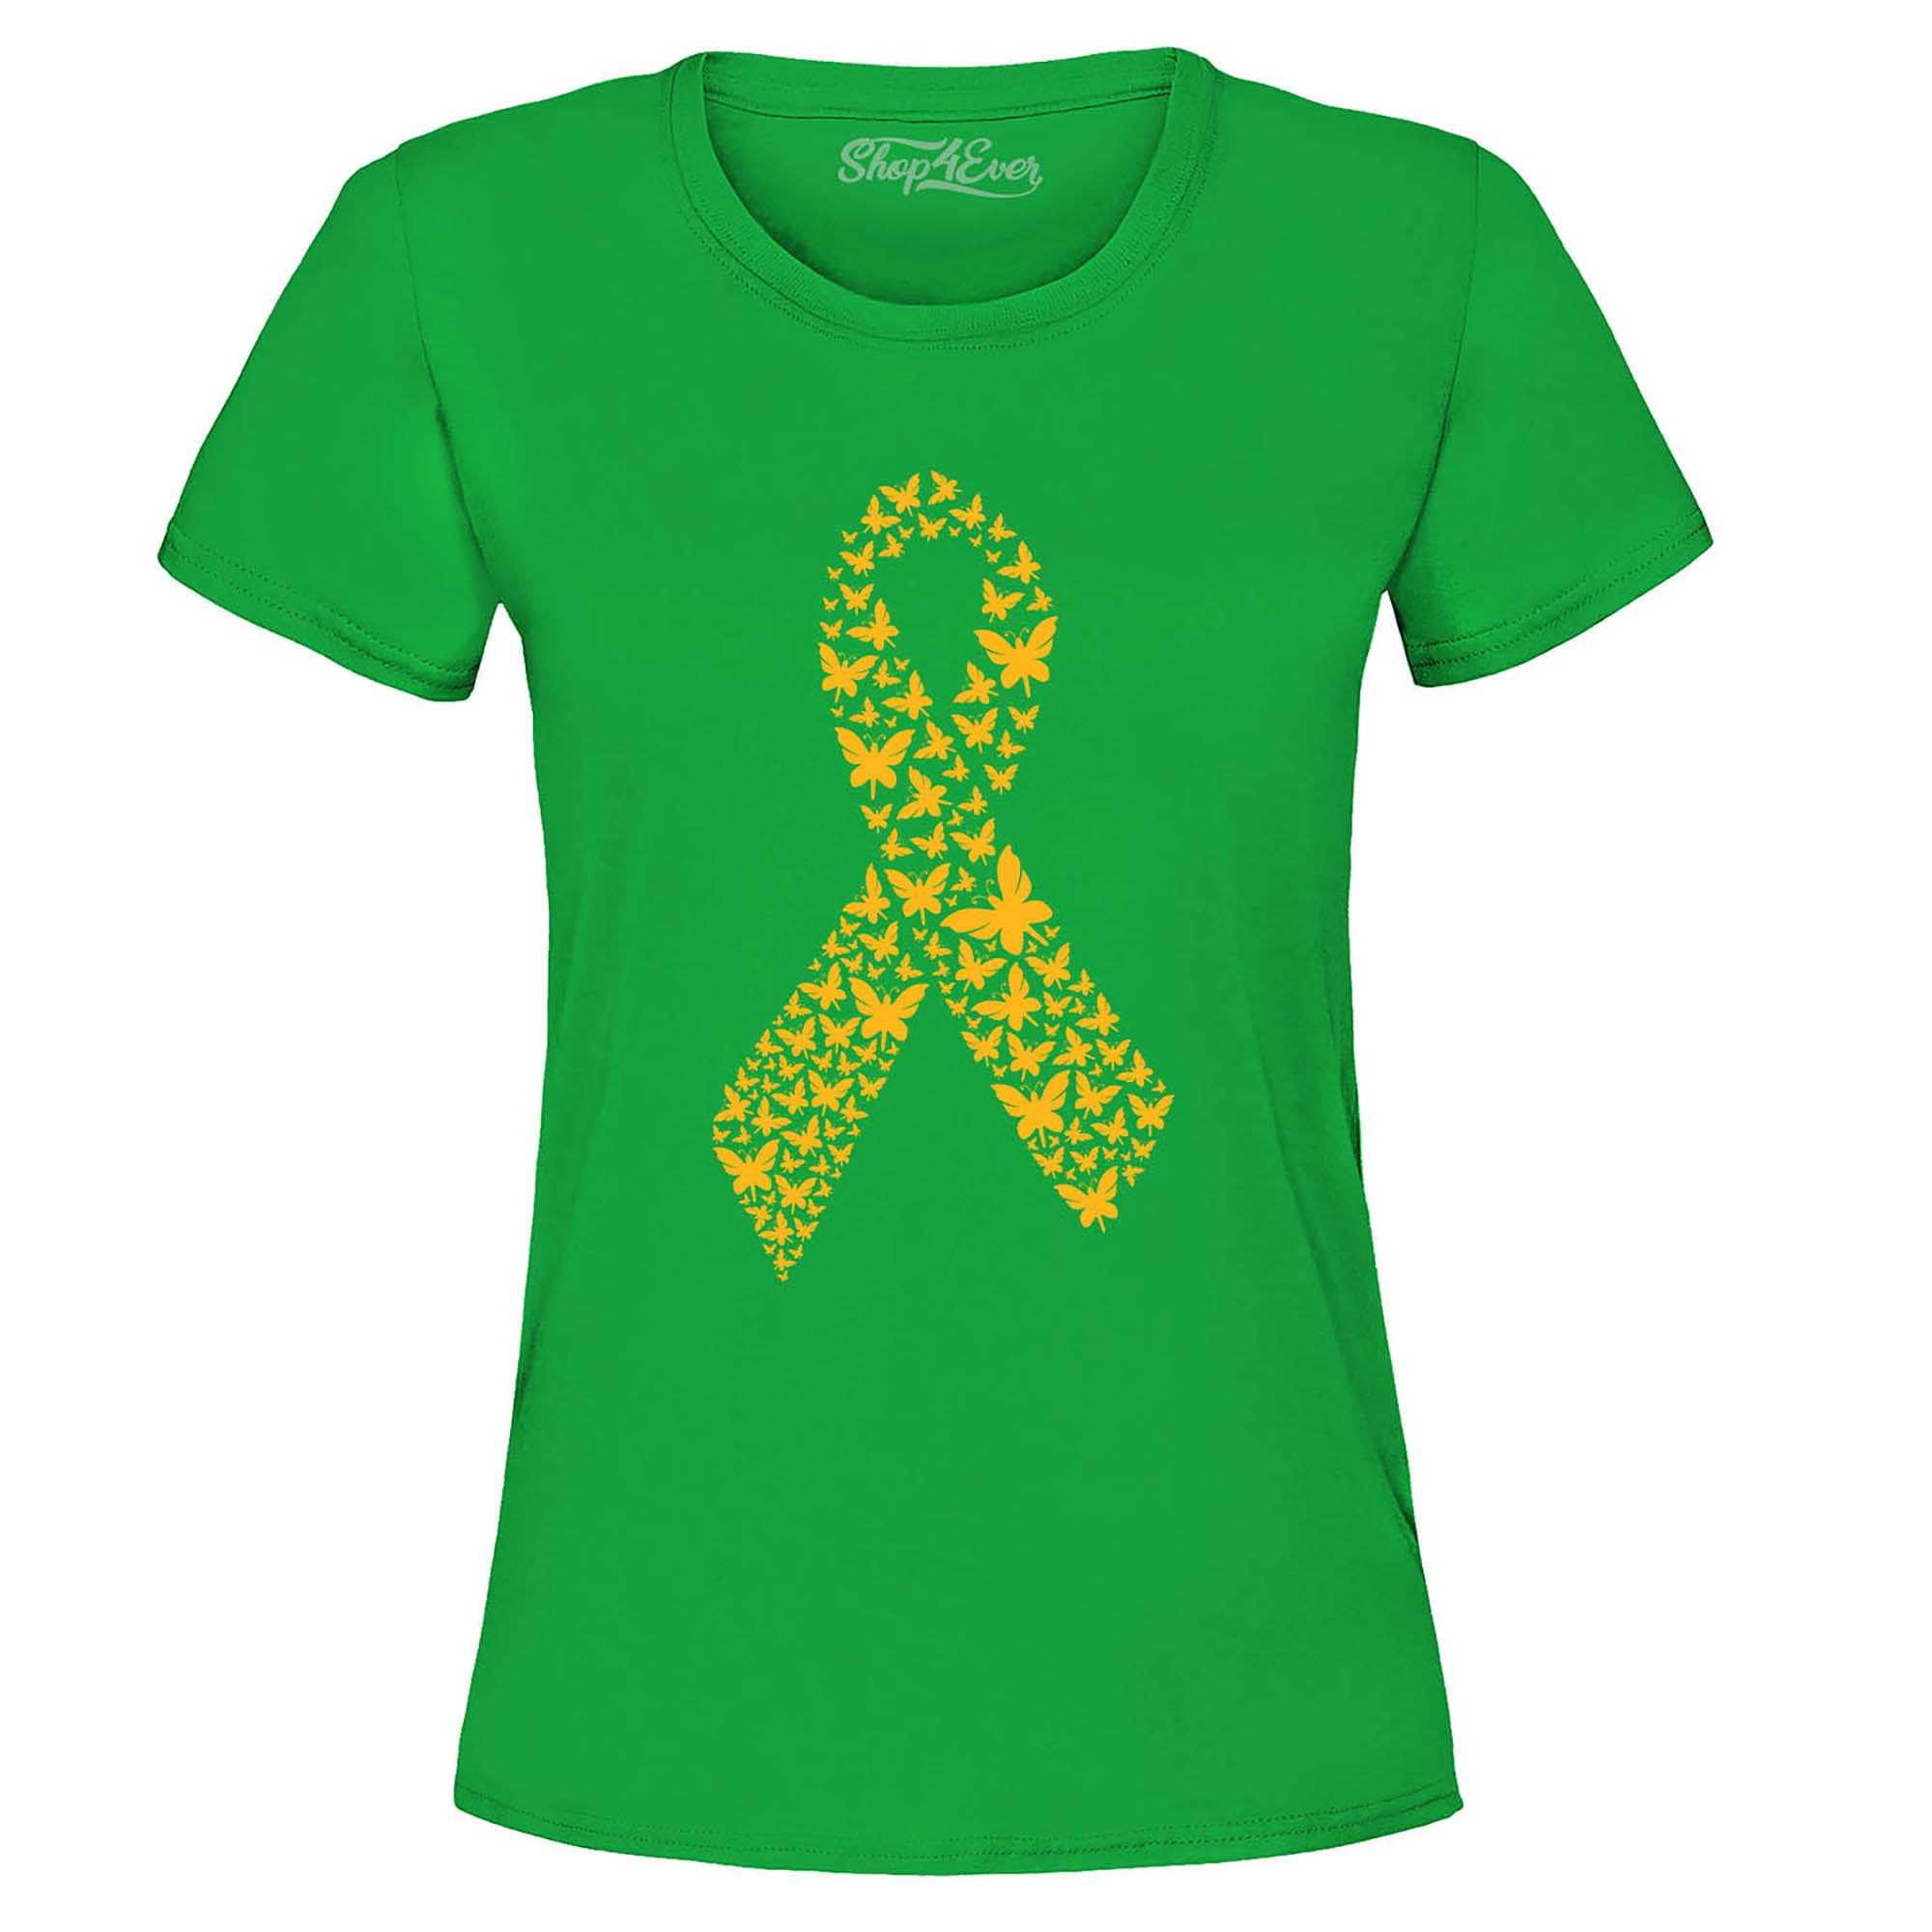 Gold Butterfly Ribbon Childhood Cancer Awareness Women's T-Shirt